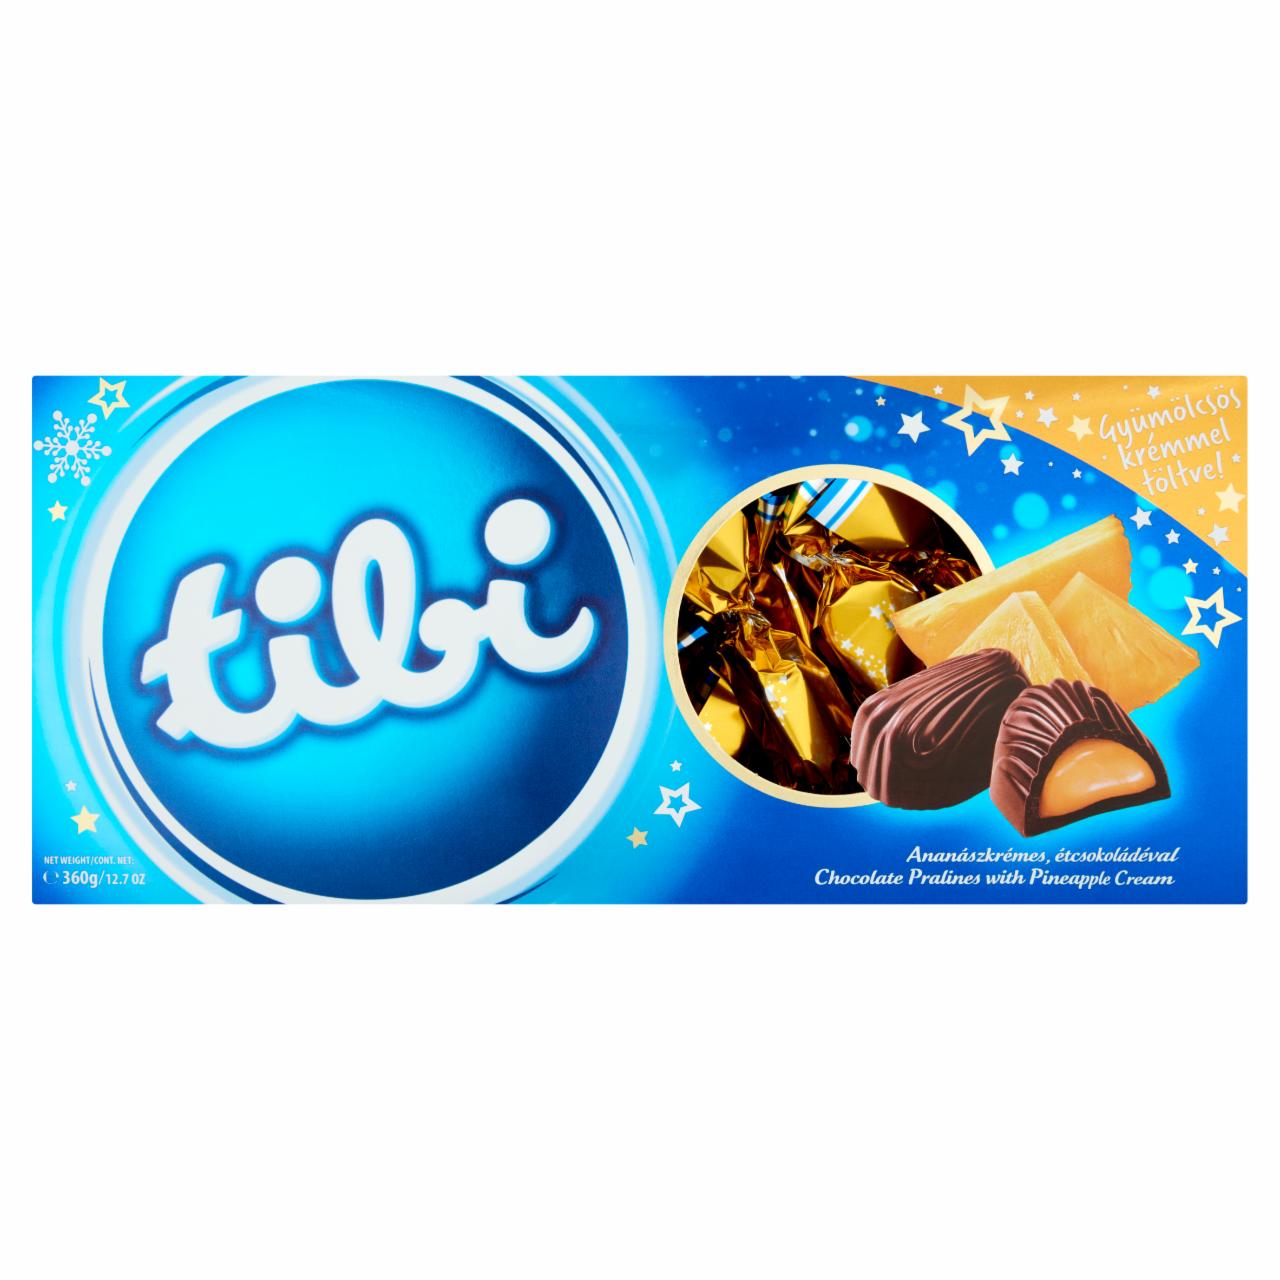 Photo - Tibi Chocolate Pralines with Pineapple Cream 360 g